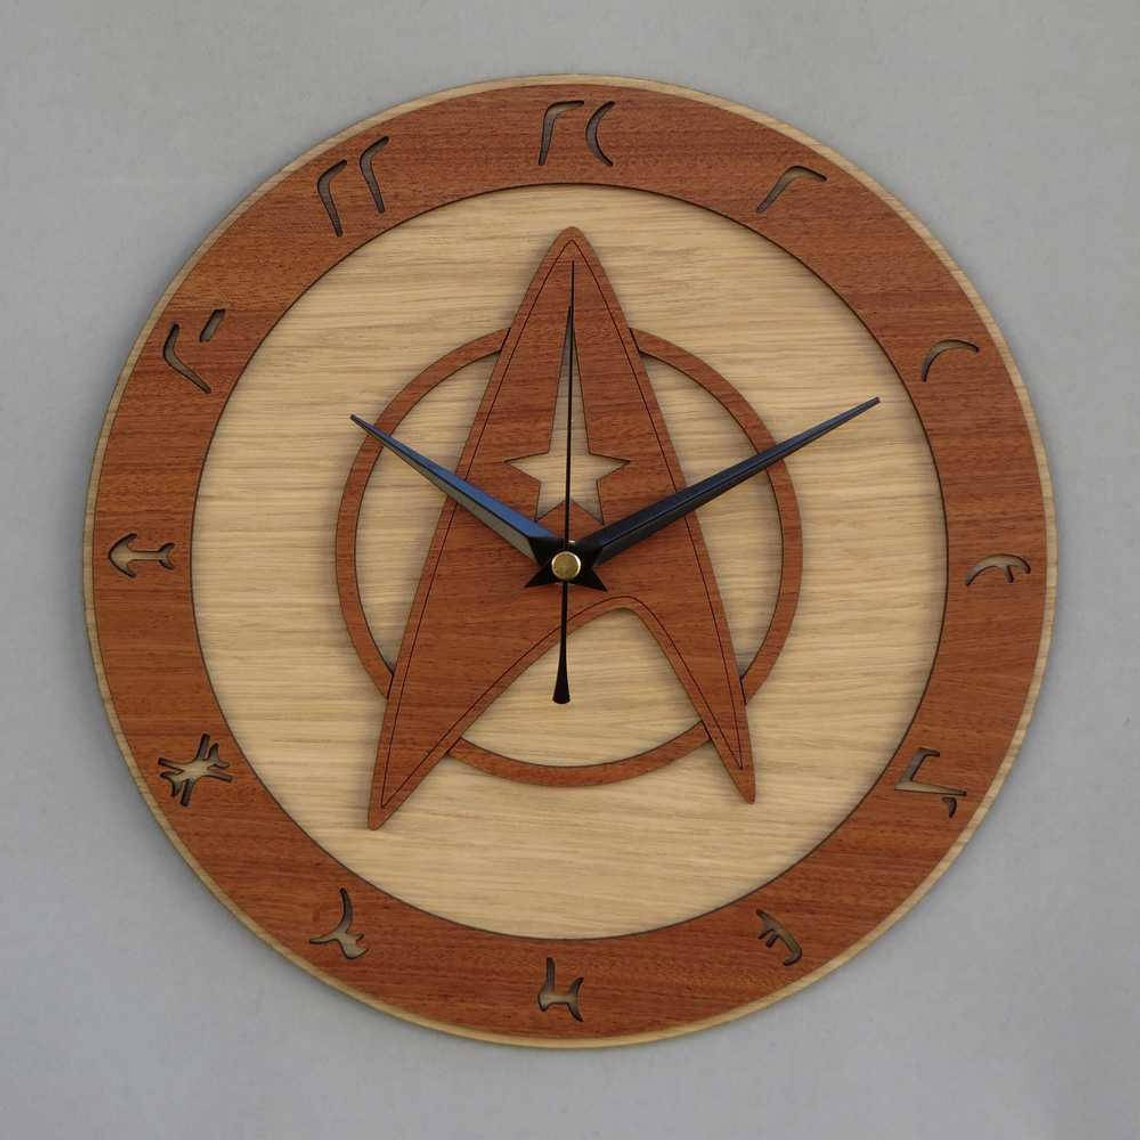 Star Trek Clock/Starfleet Clock